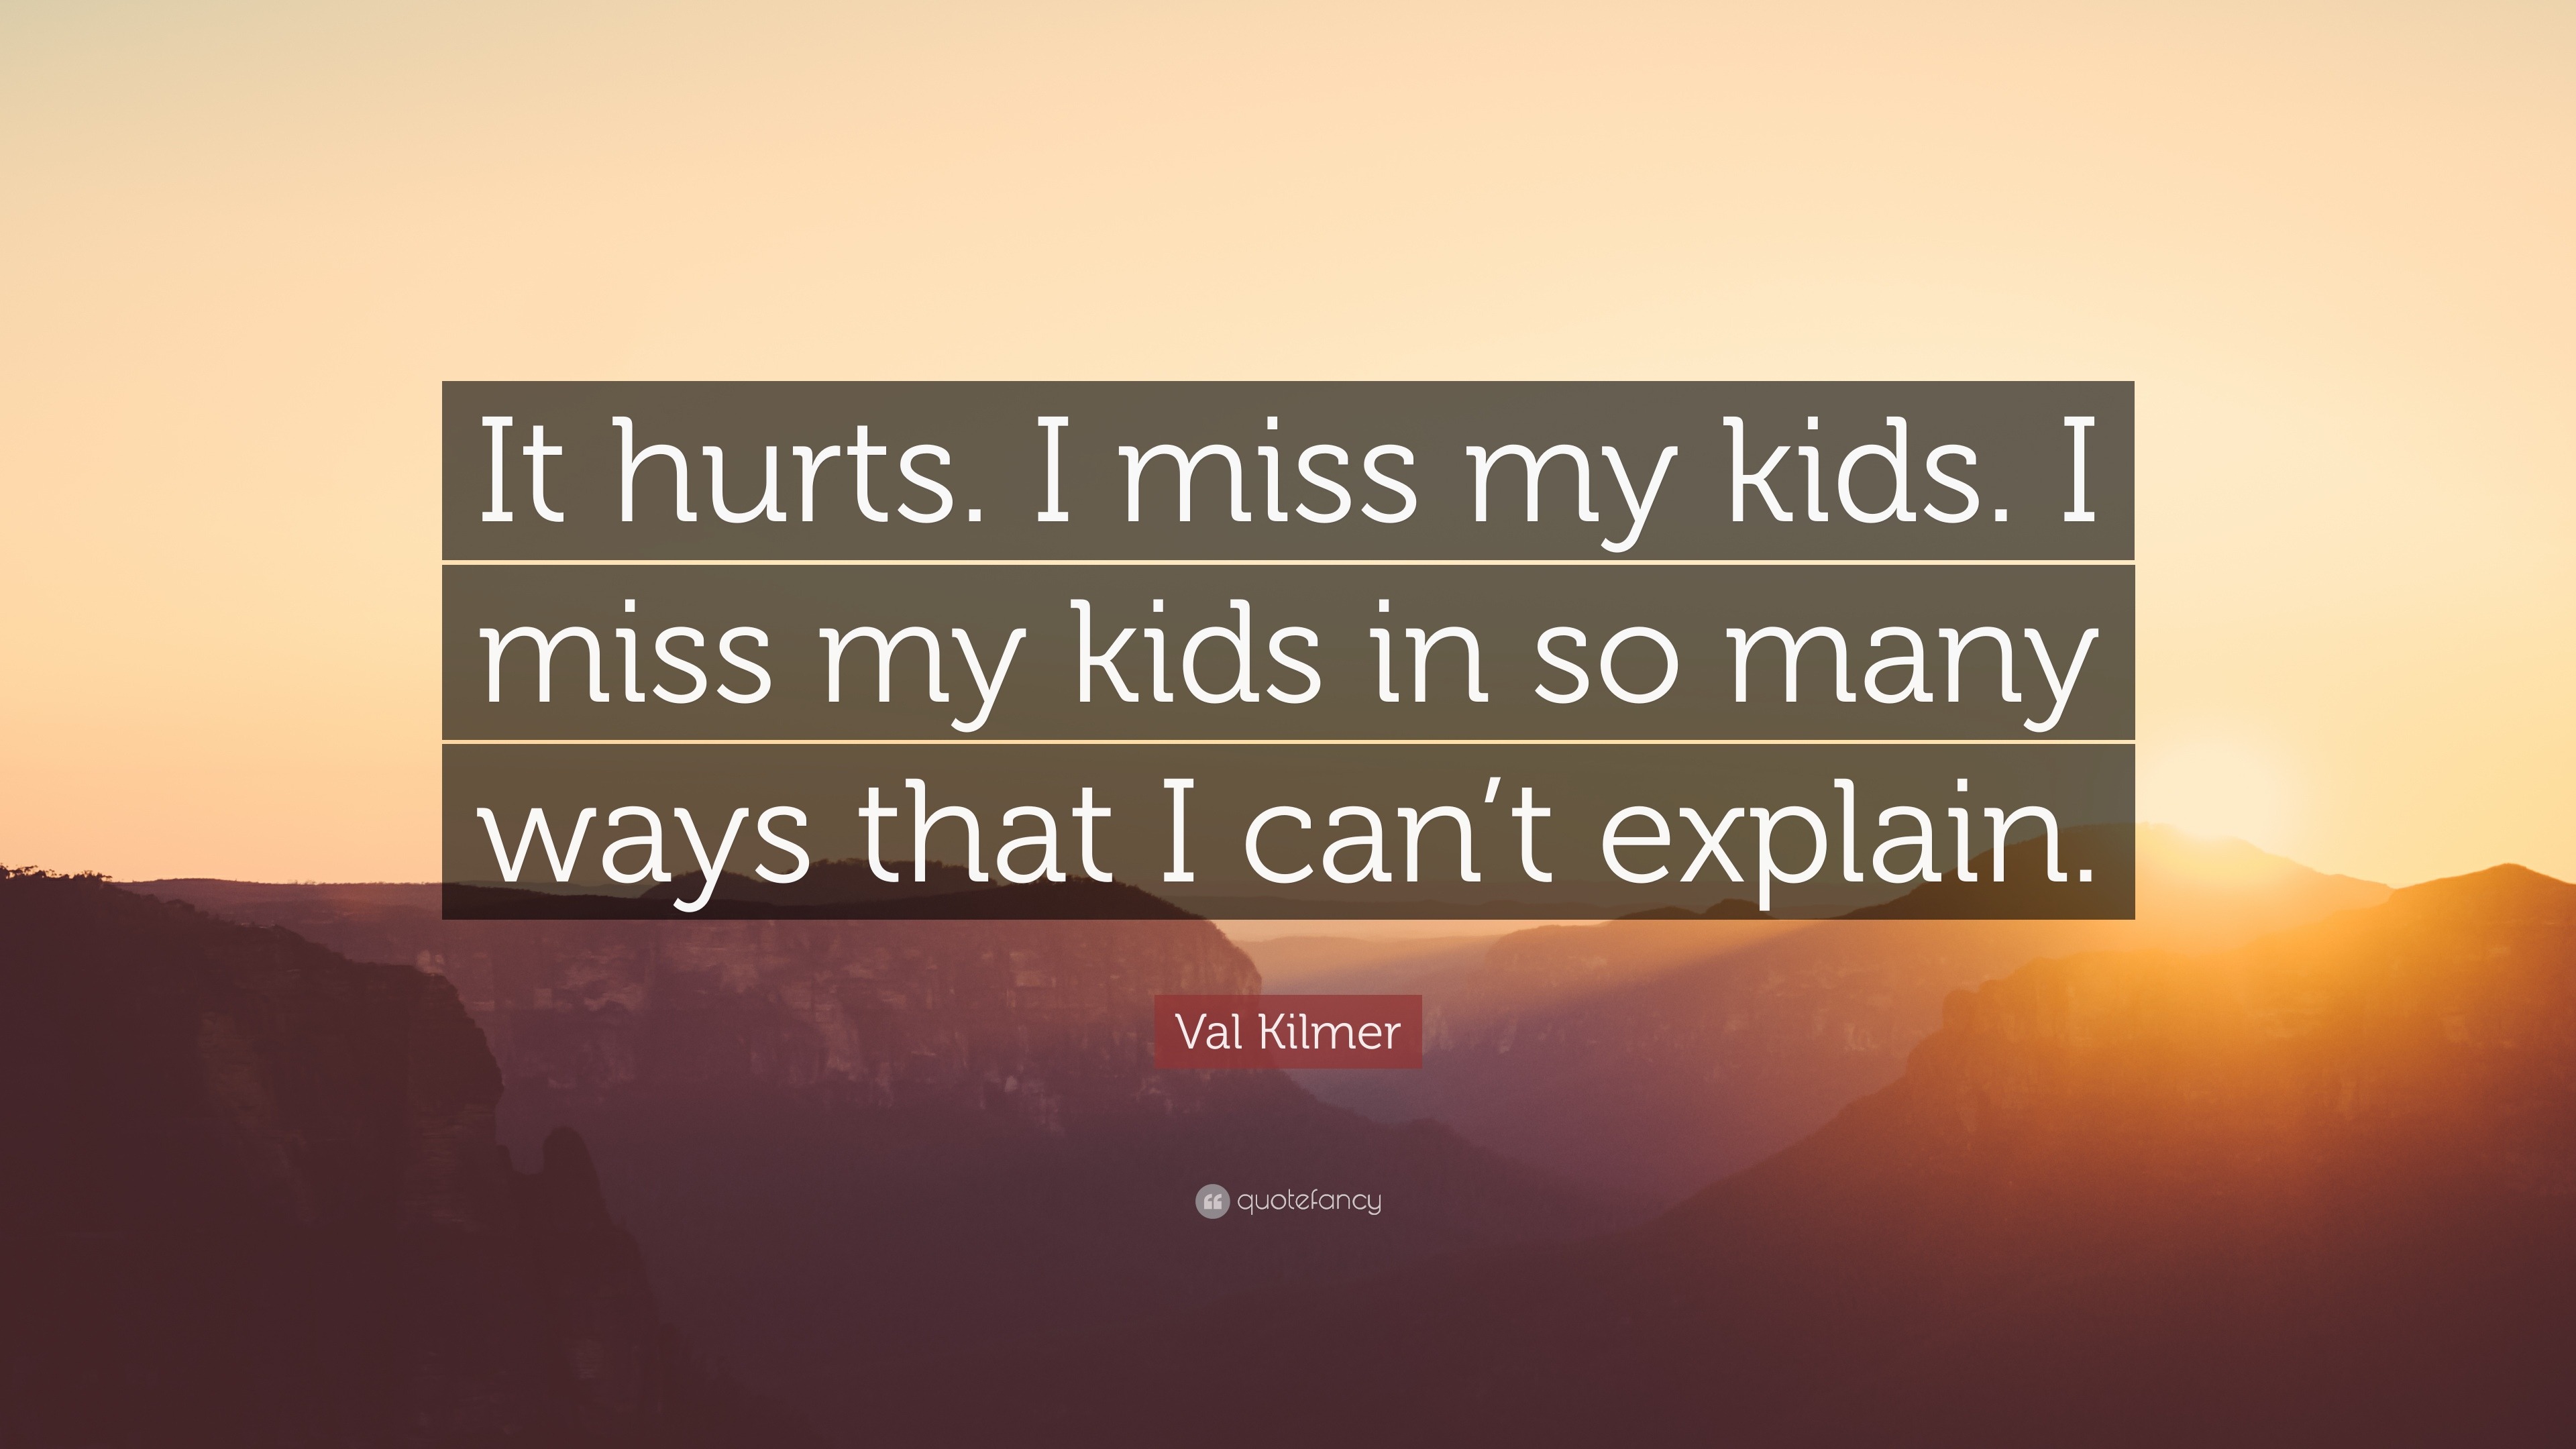 Val Kilmer Quote: "It hurts. I miss my kids. I miss my ...